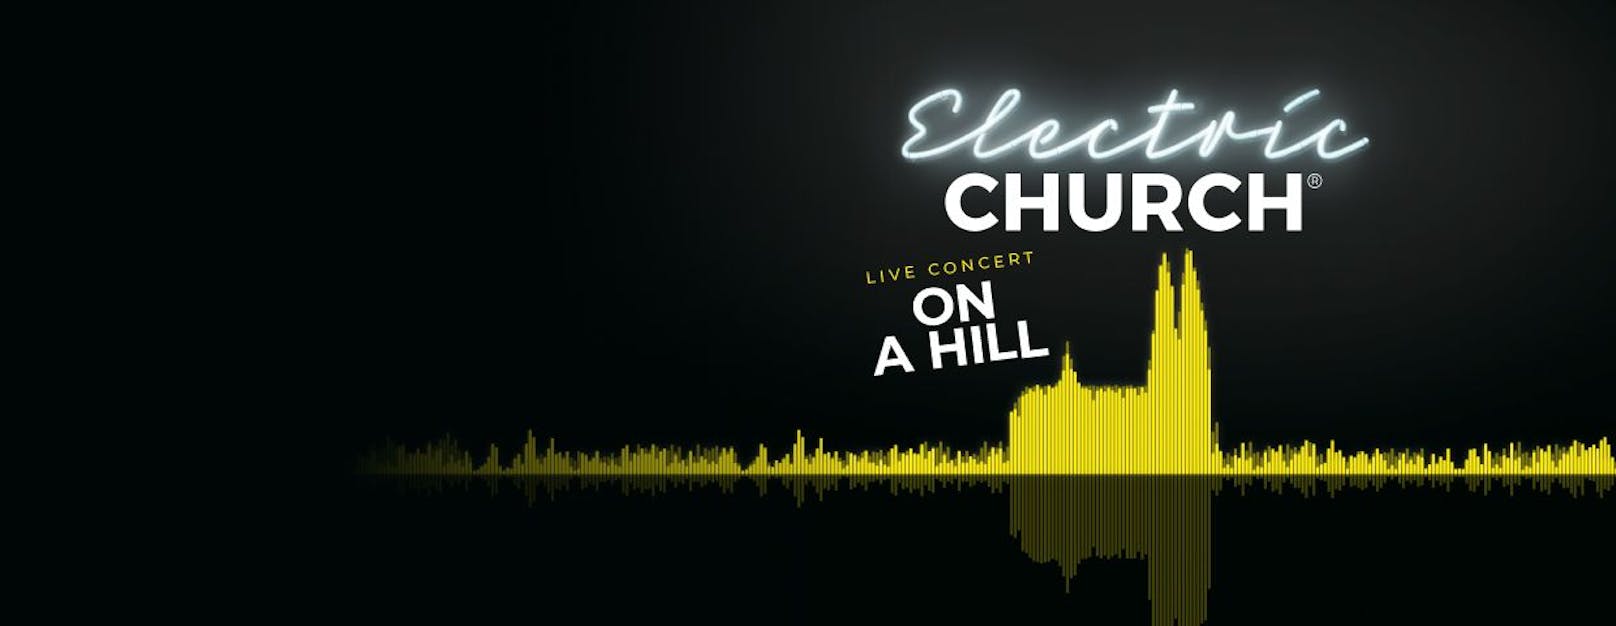 Jetzt teilnehmen und zwei exklusive Vorpremieren-Karten für das Electric Church Konzert am 28. April gewinnen!